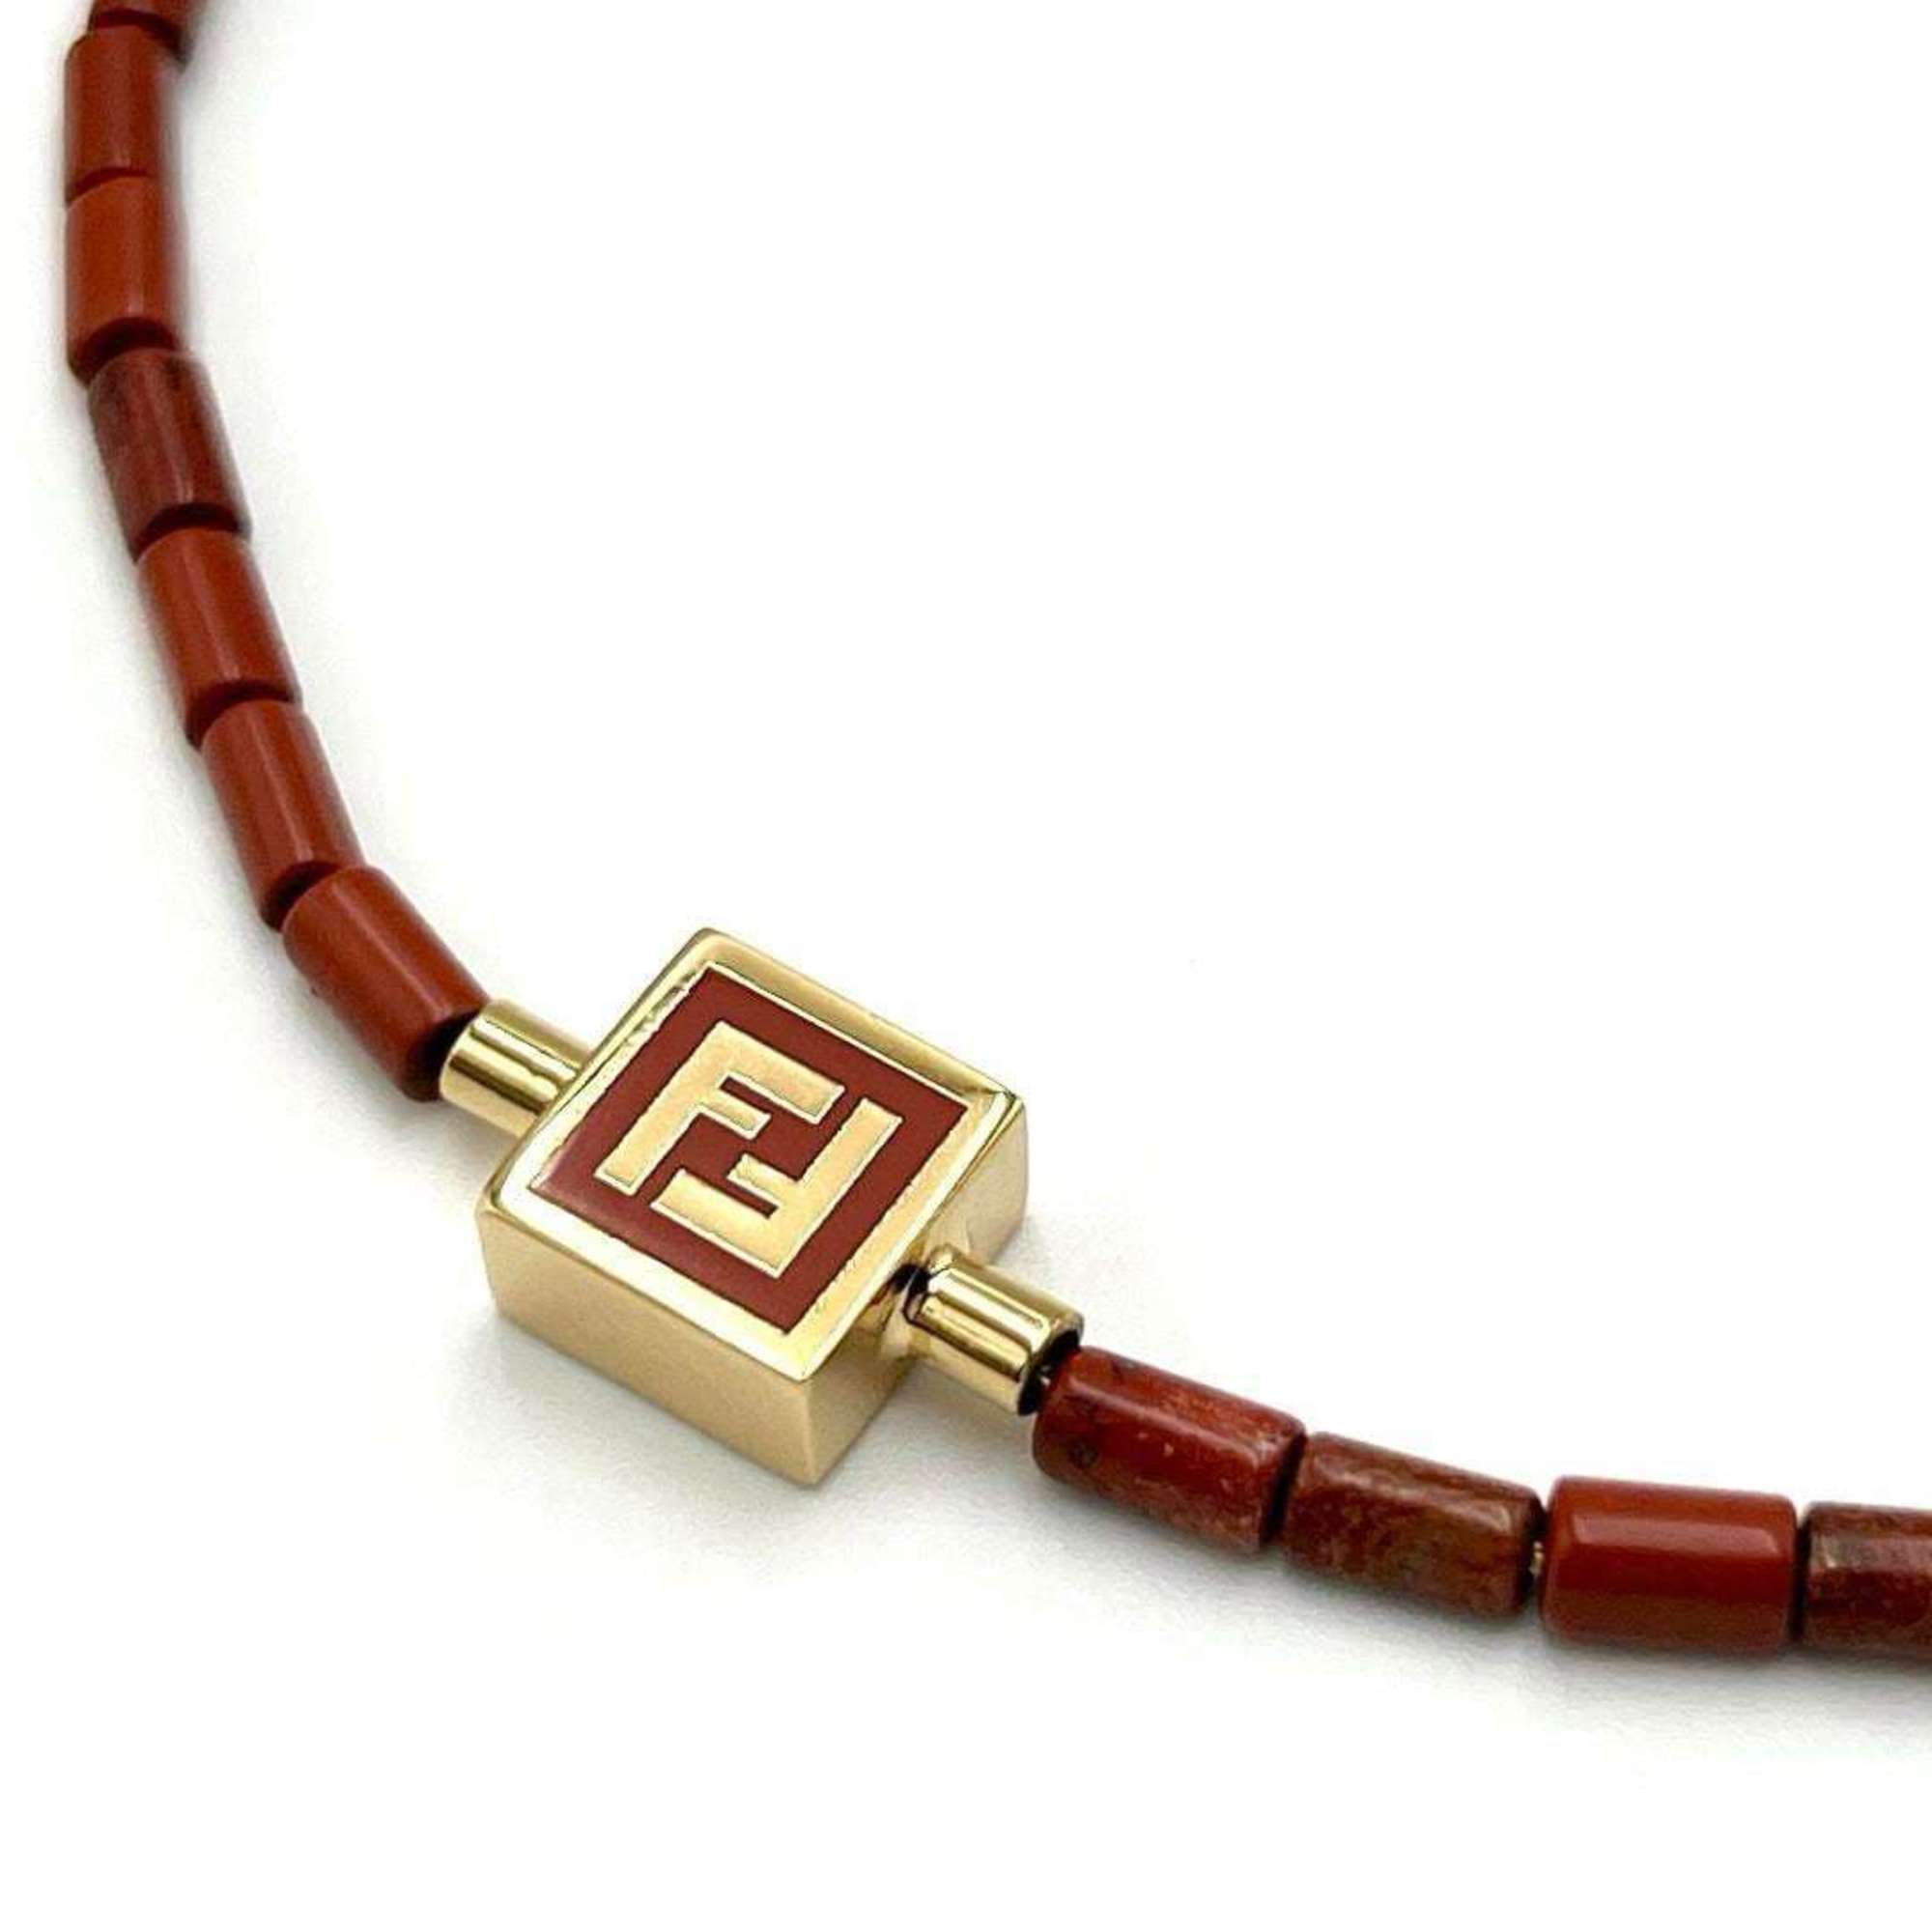 FENDI Men's Necklace Pendant FF Beads